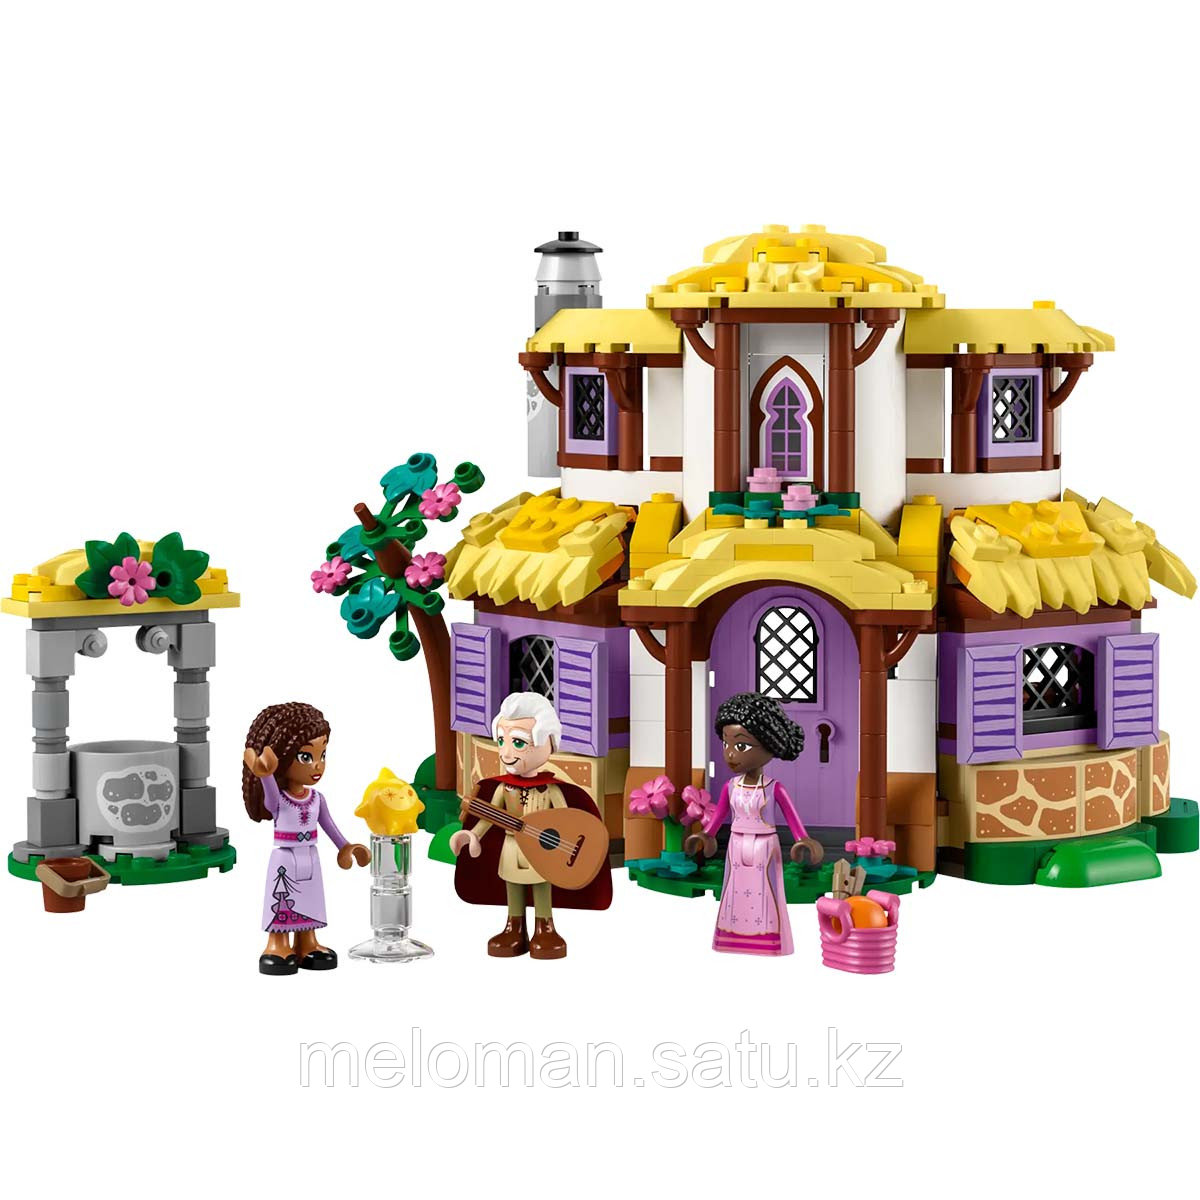 LEGO: Домик желаний Disney Princess 43231